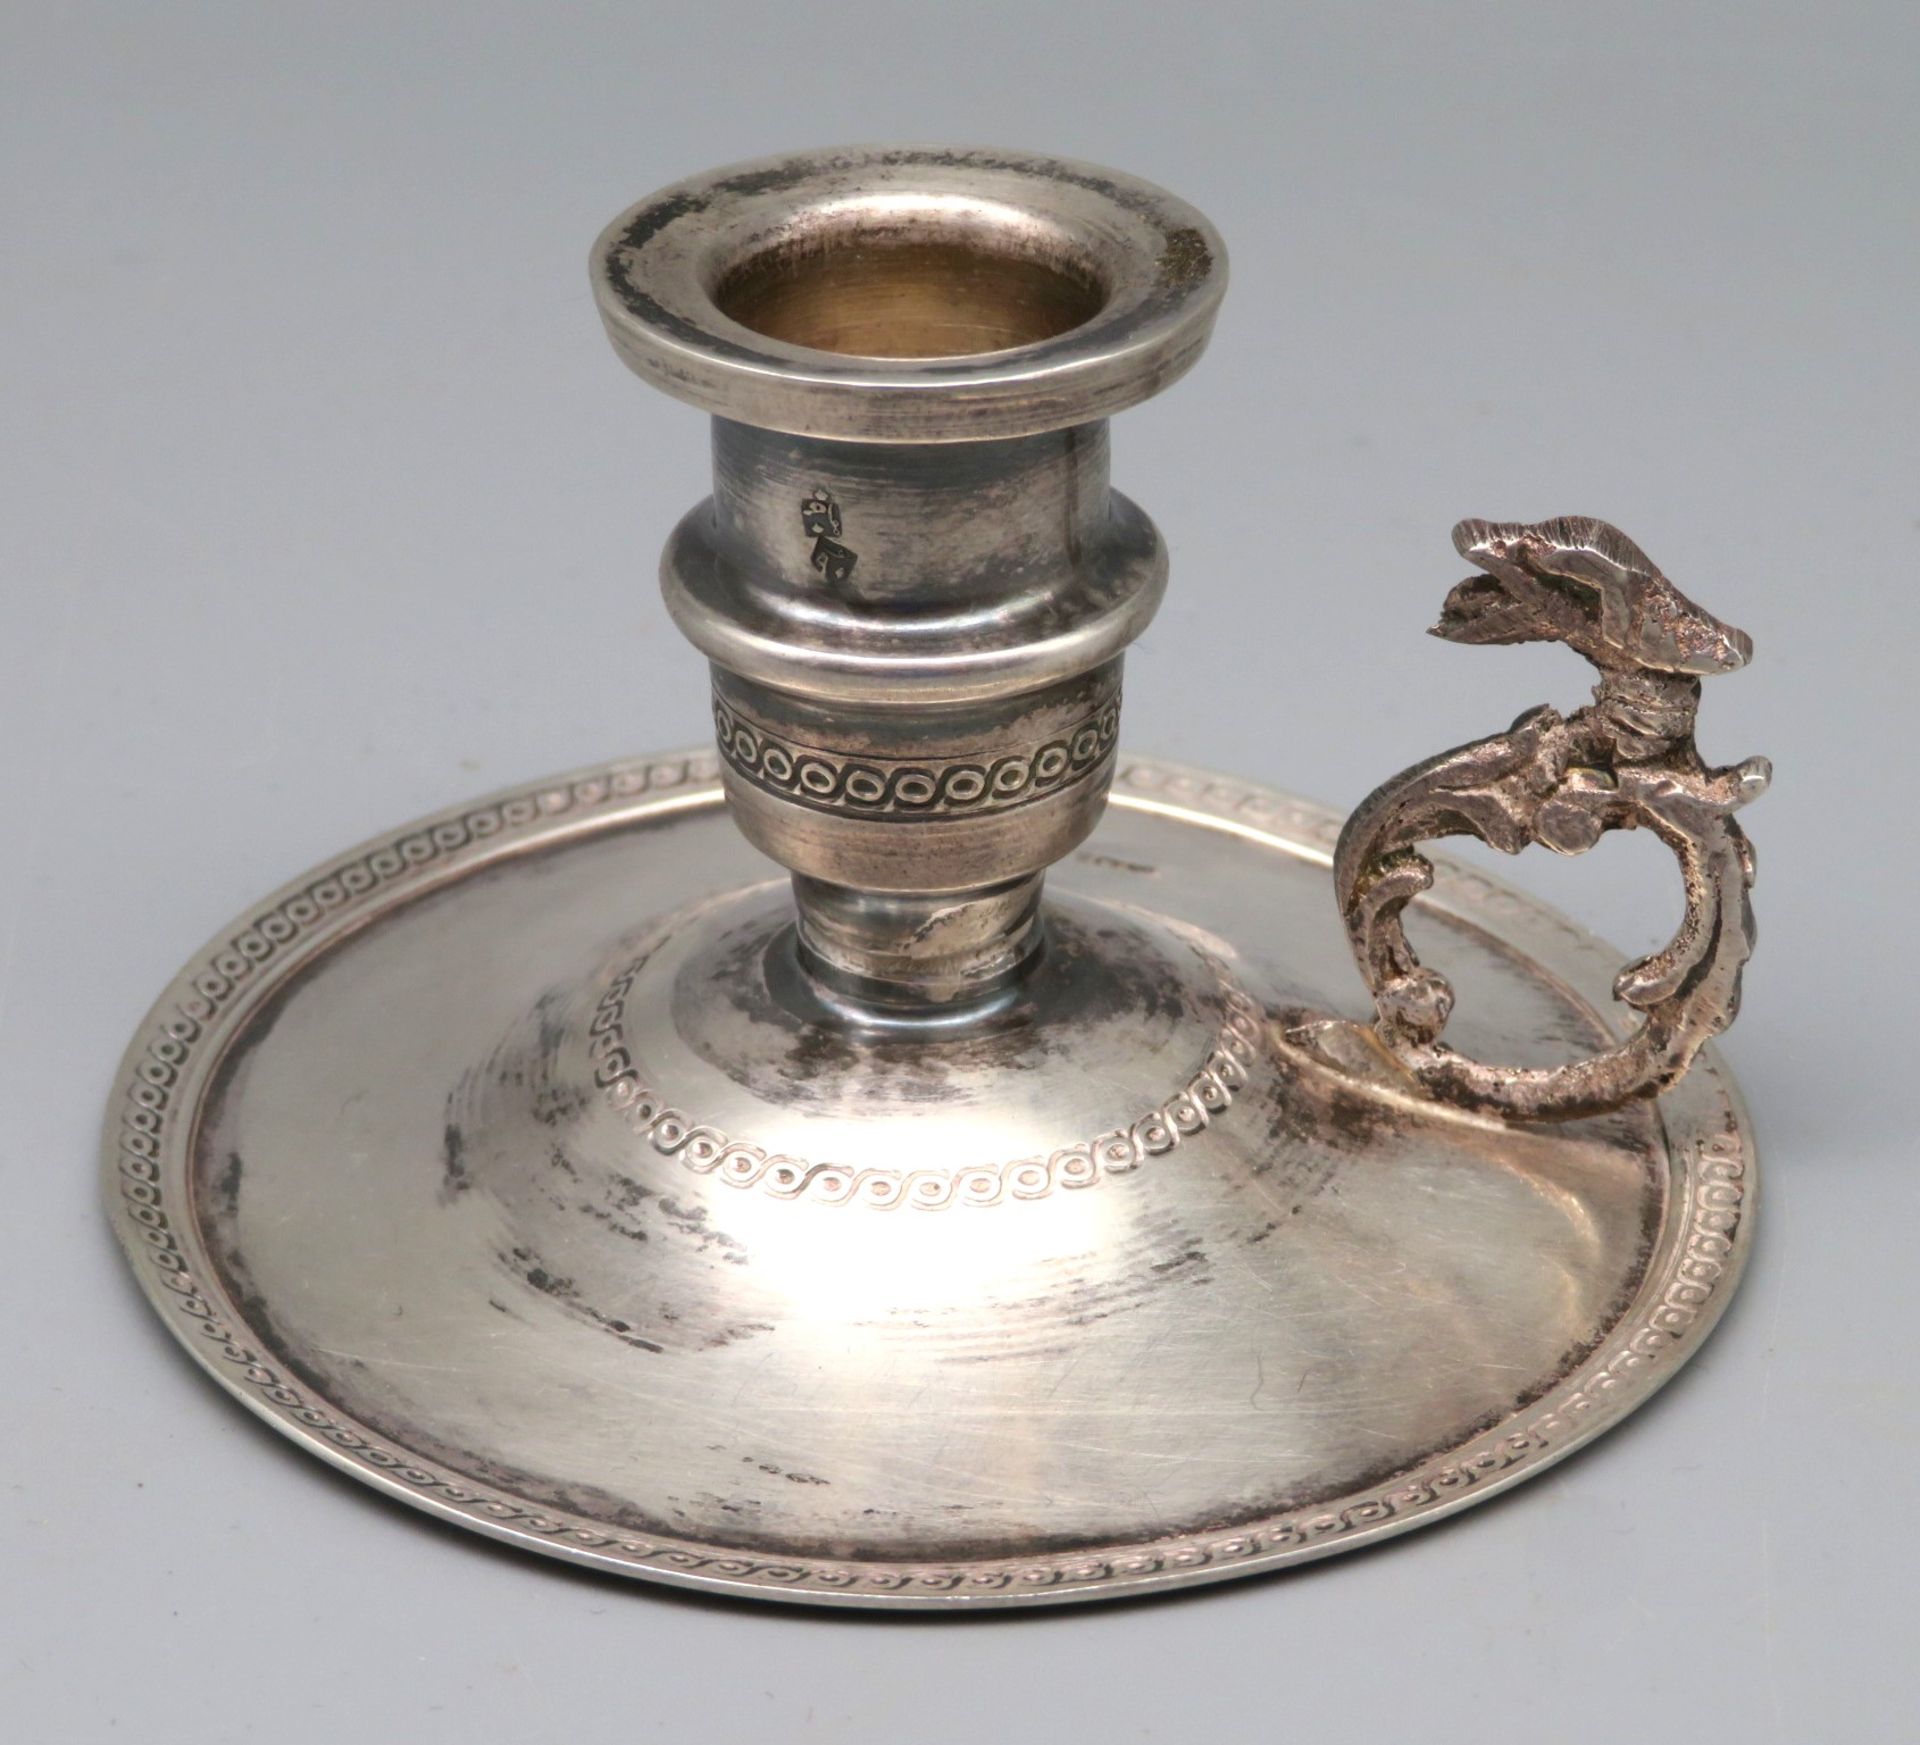 Darmolleuchter, Orient, Silber 800/000, punziert, 67 g, Handhabe in Gestalt eines Fabeltieres, alte